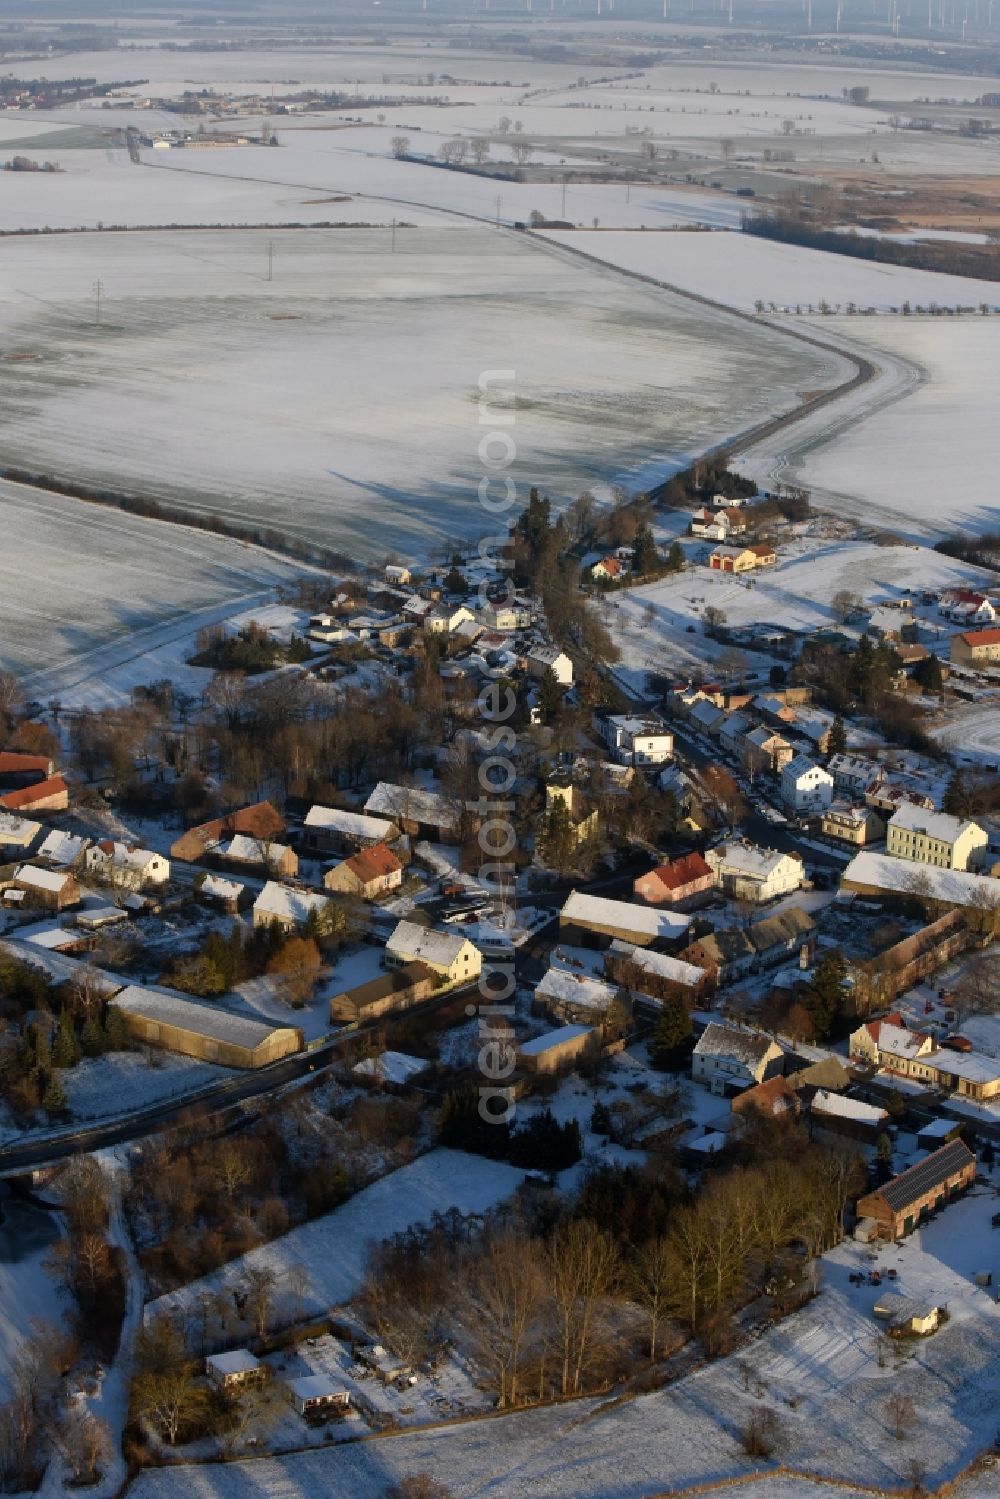 Aerial image Päwesin - Wintry snowy village view in Paewesin in the state Brandenburg